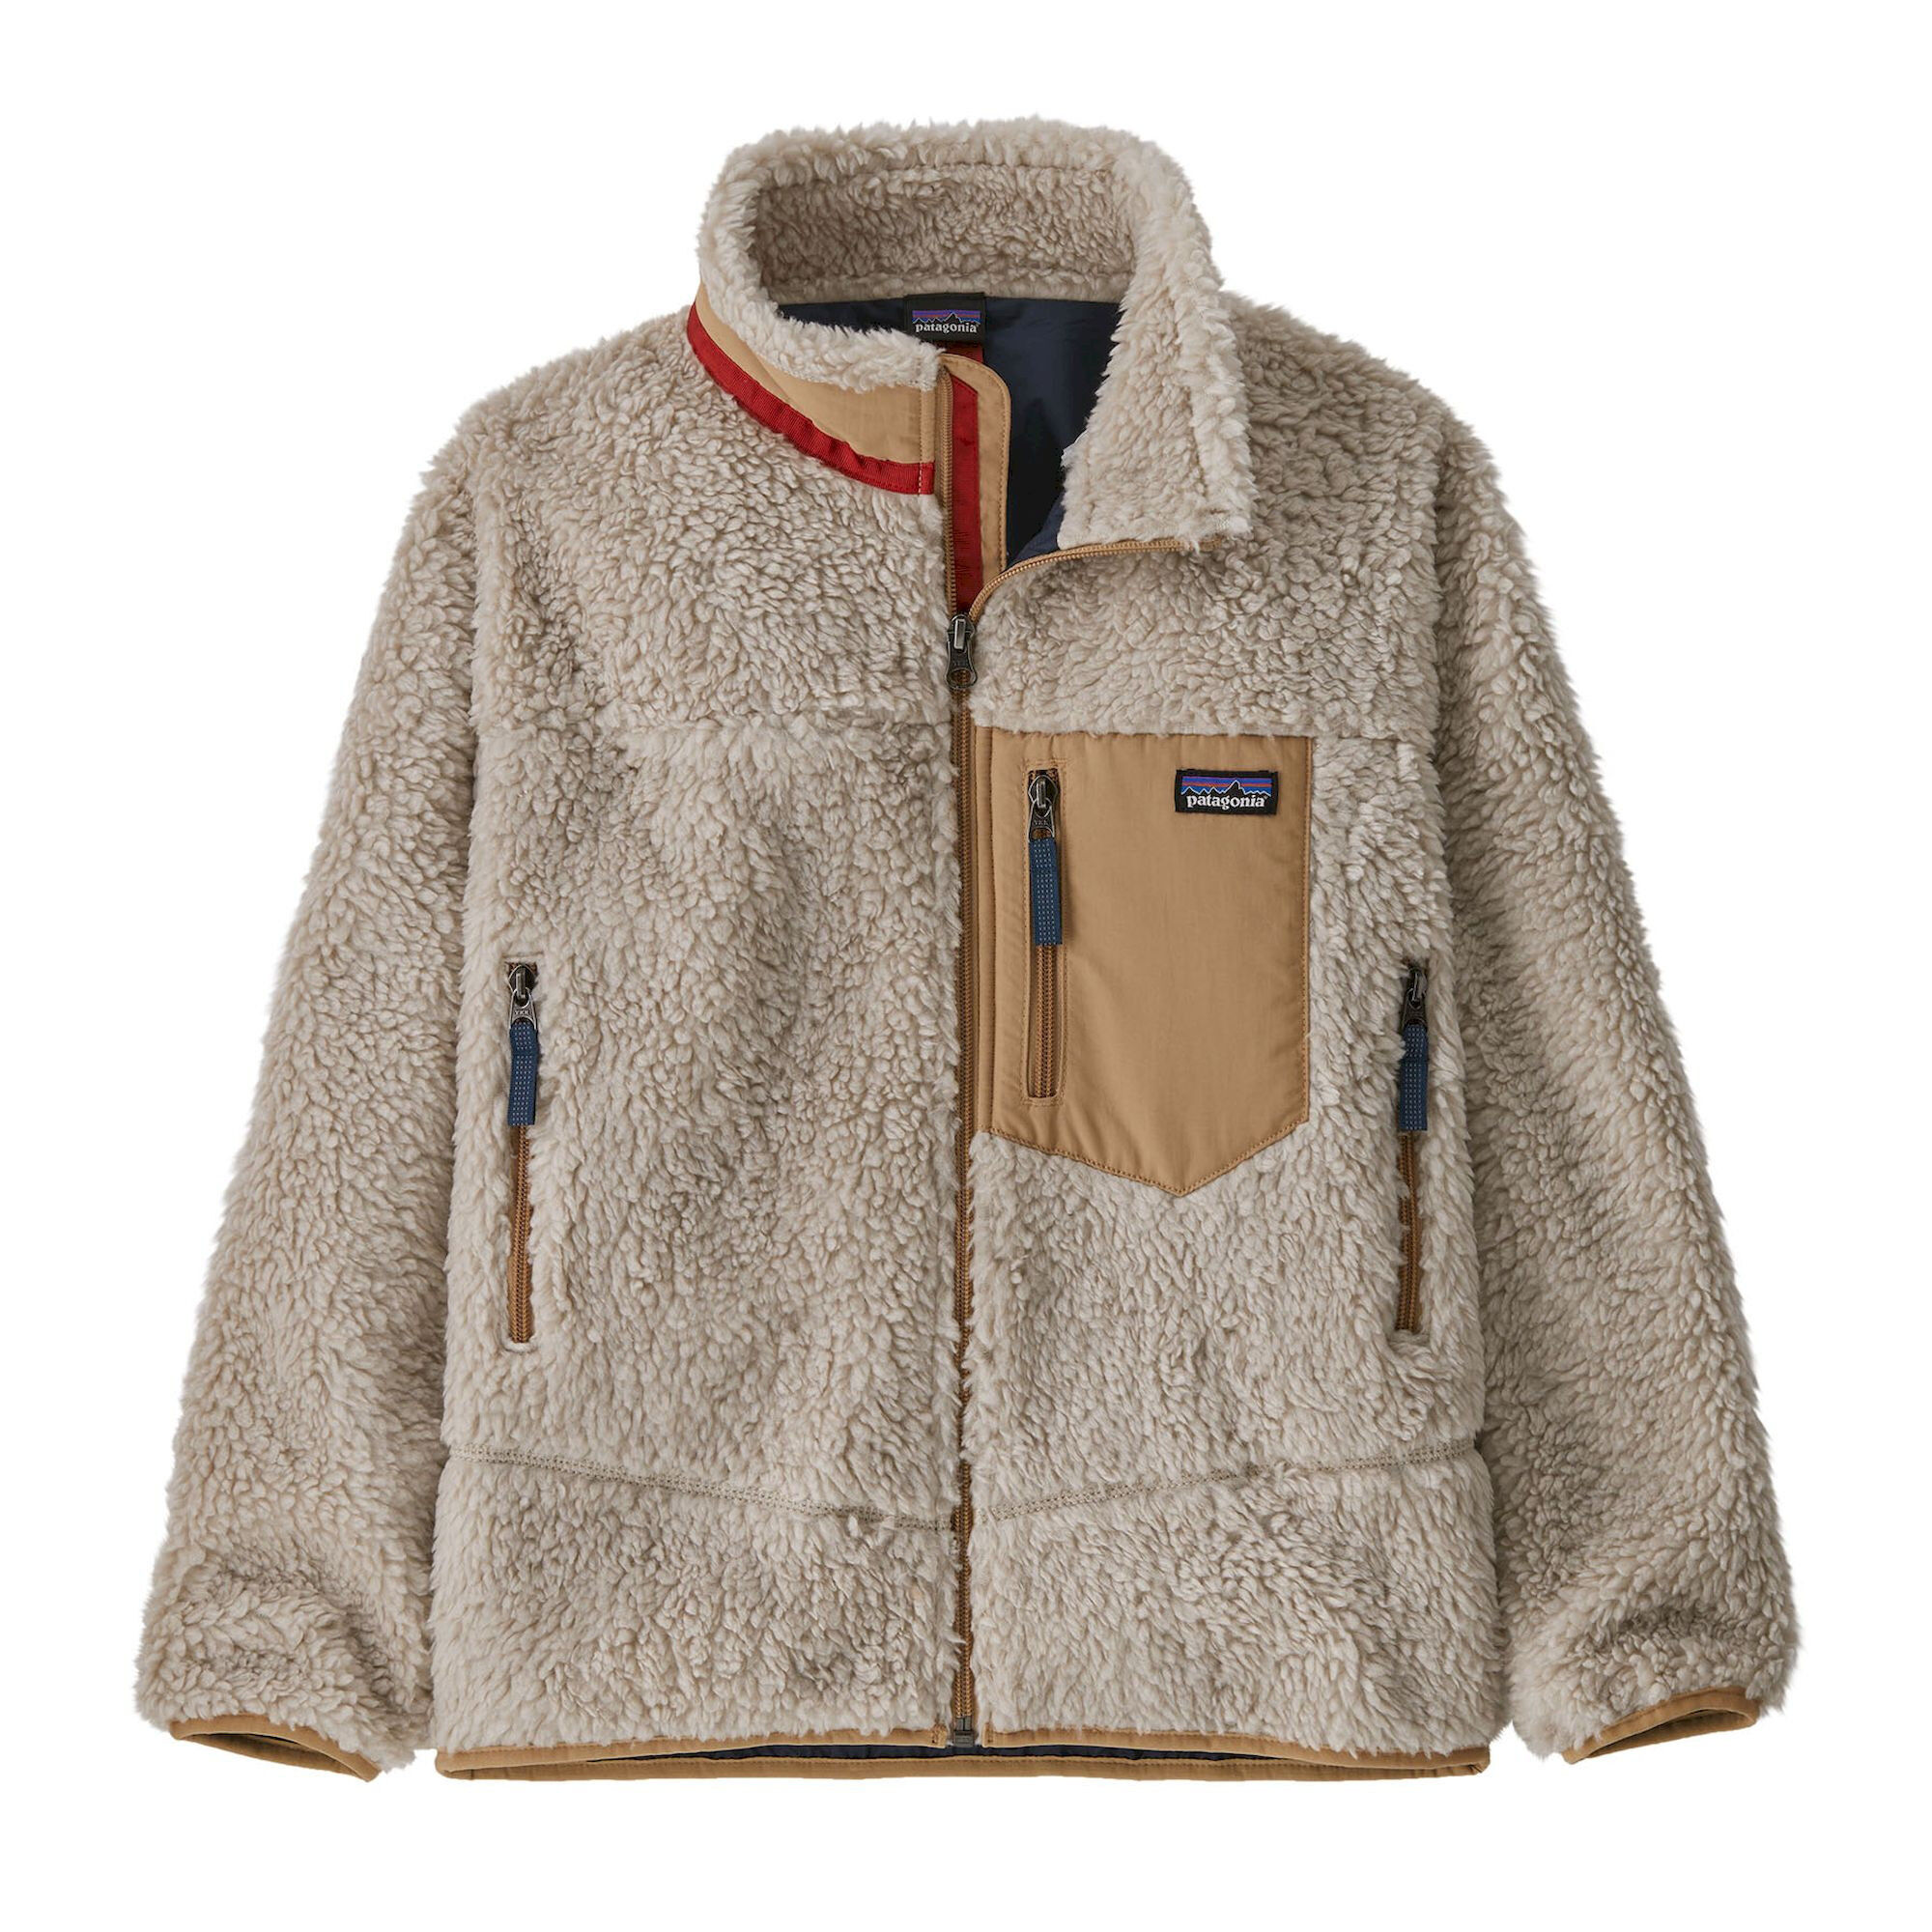 Patagonia K's Retro-X Jacket - Forro polar - Niños